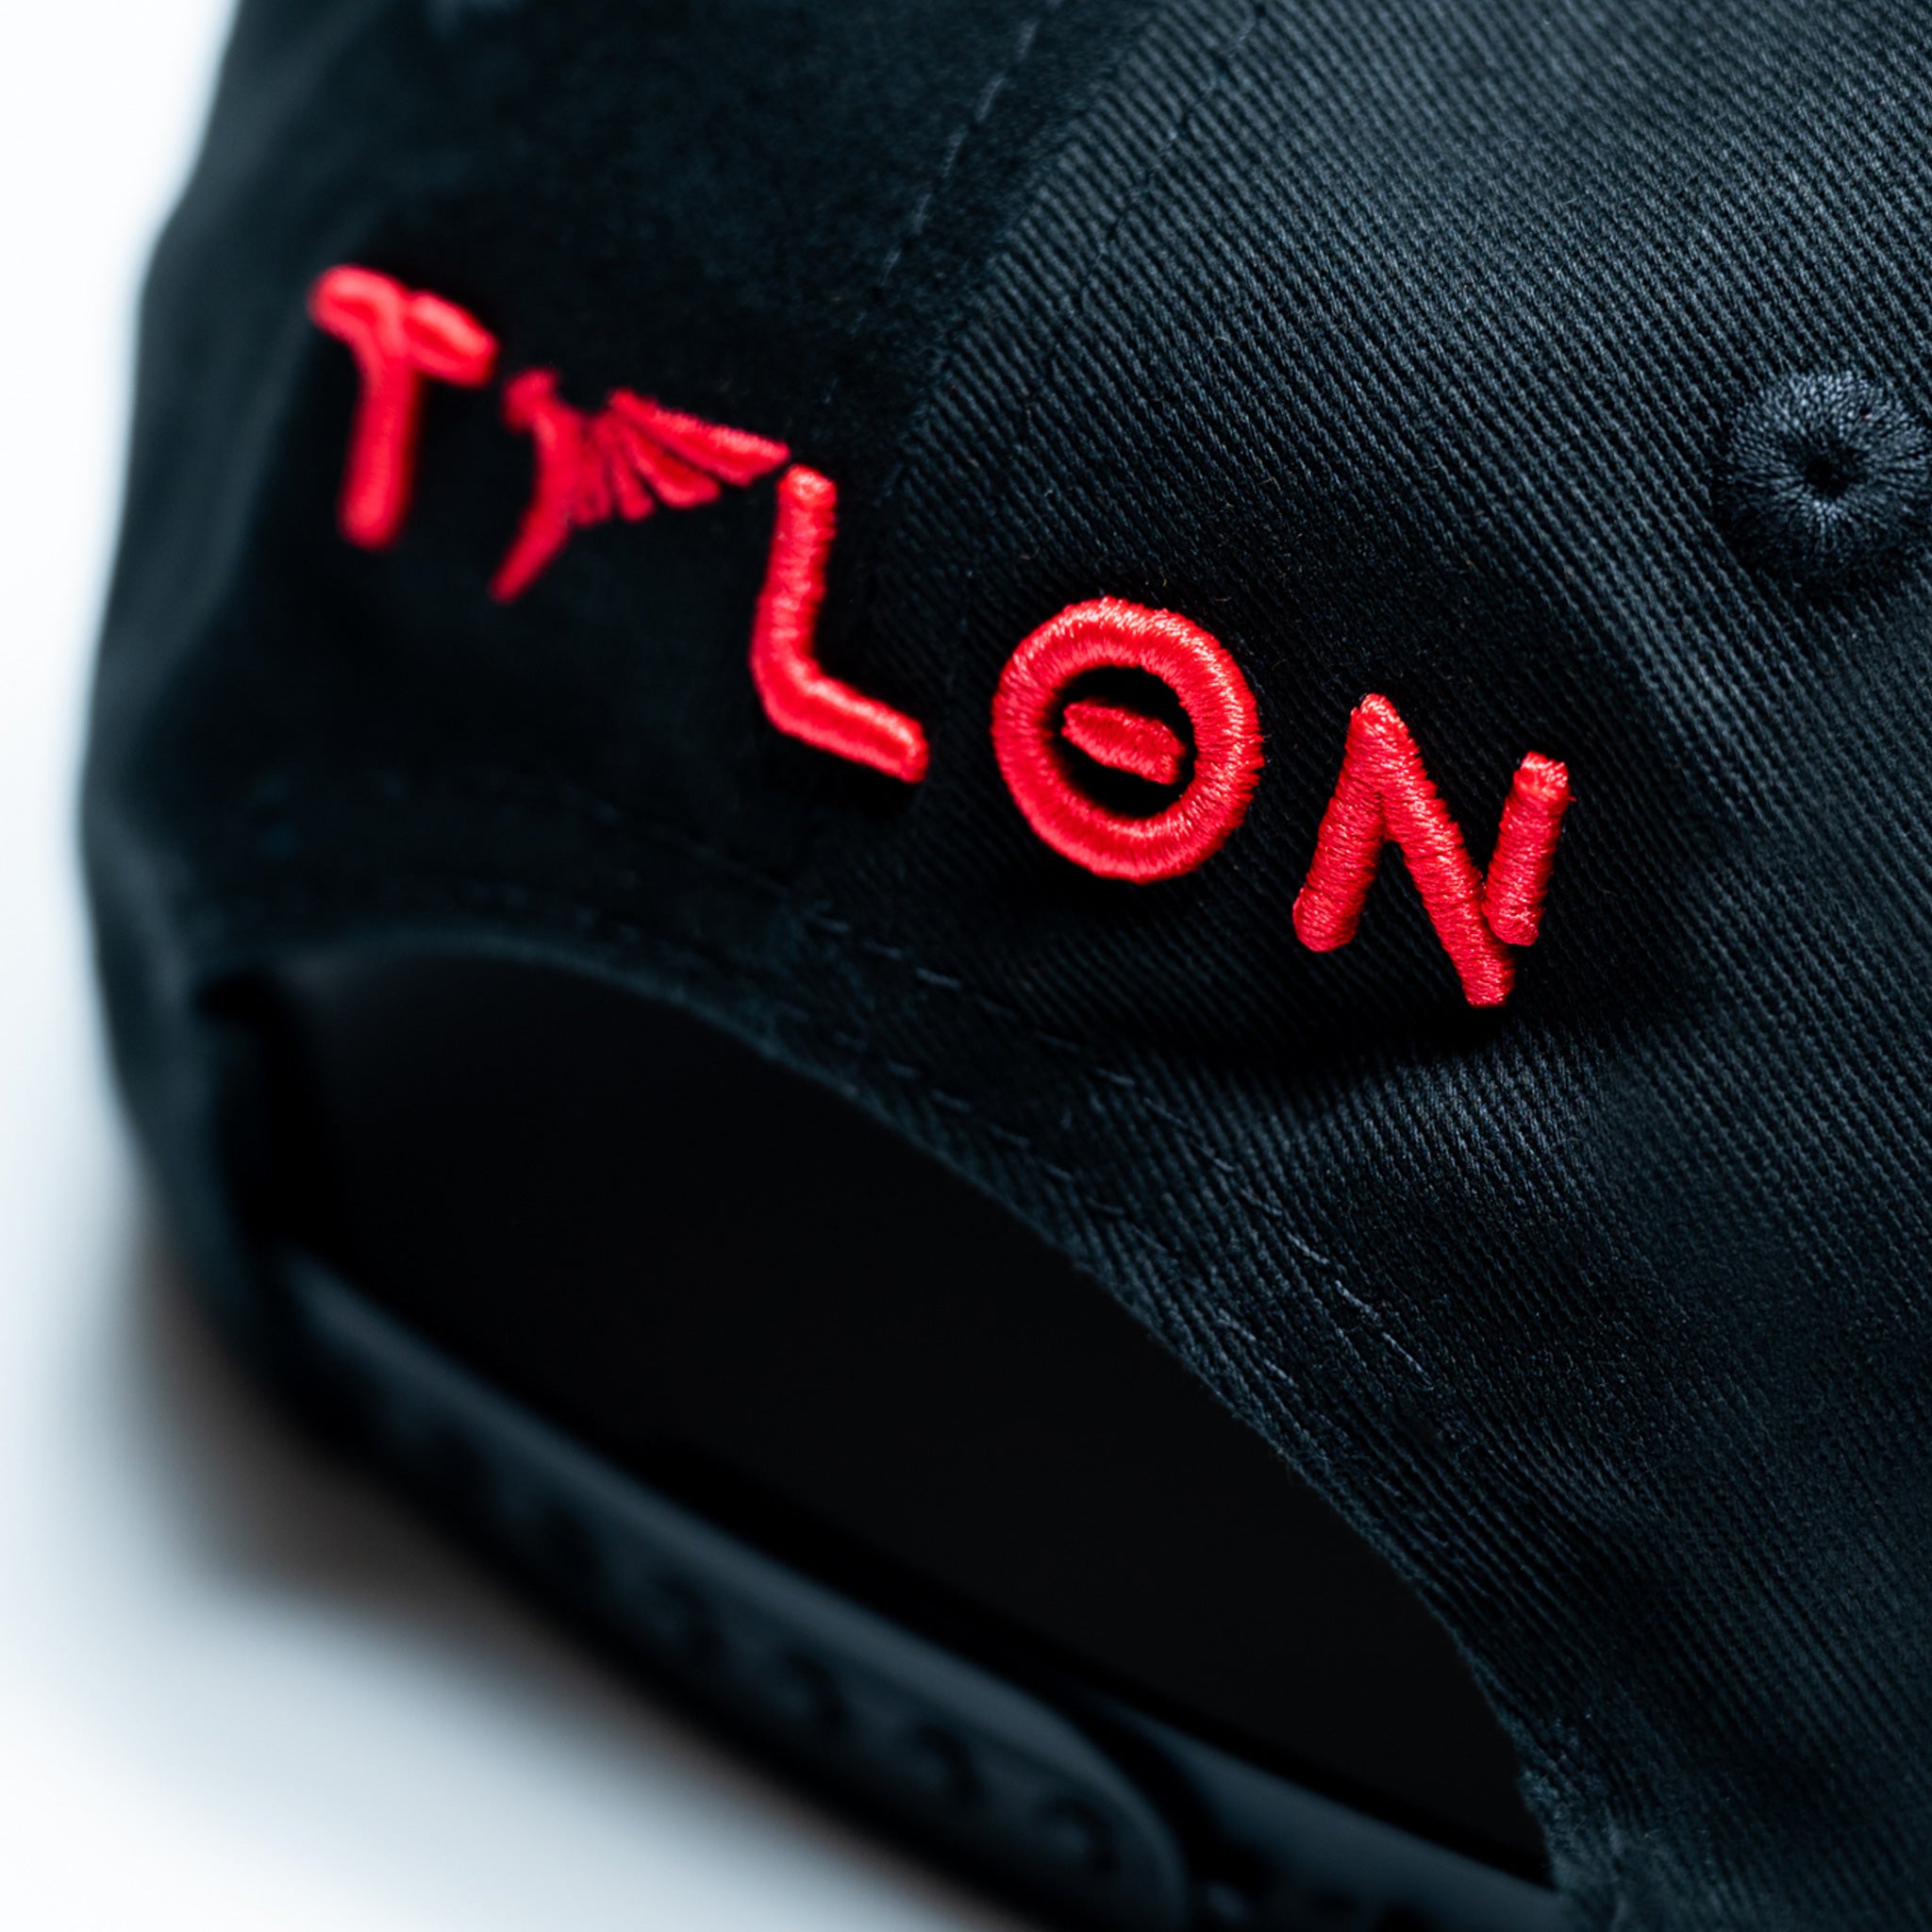 Talon Logo Snapback